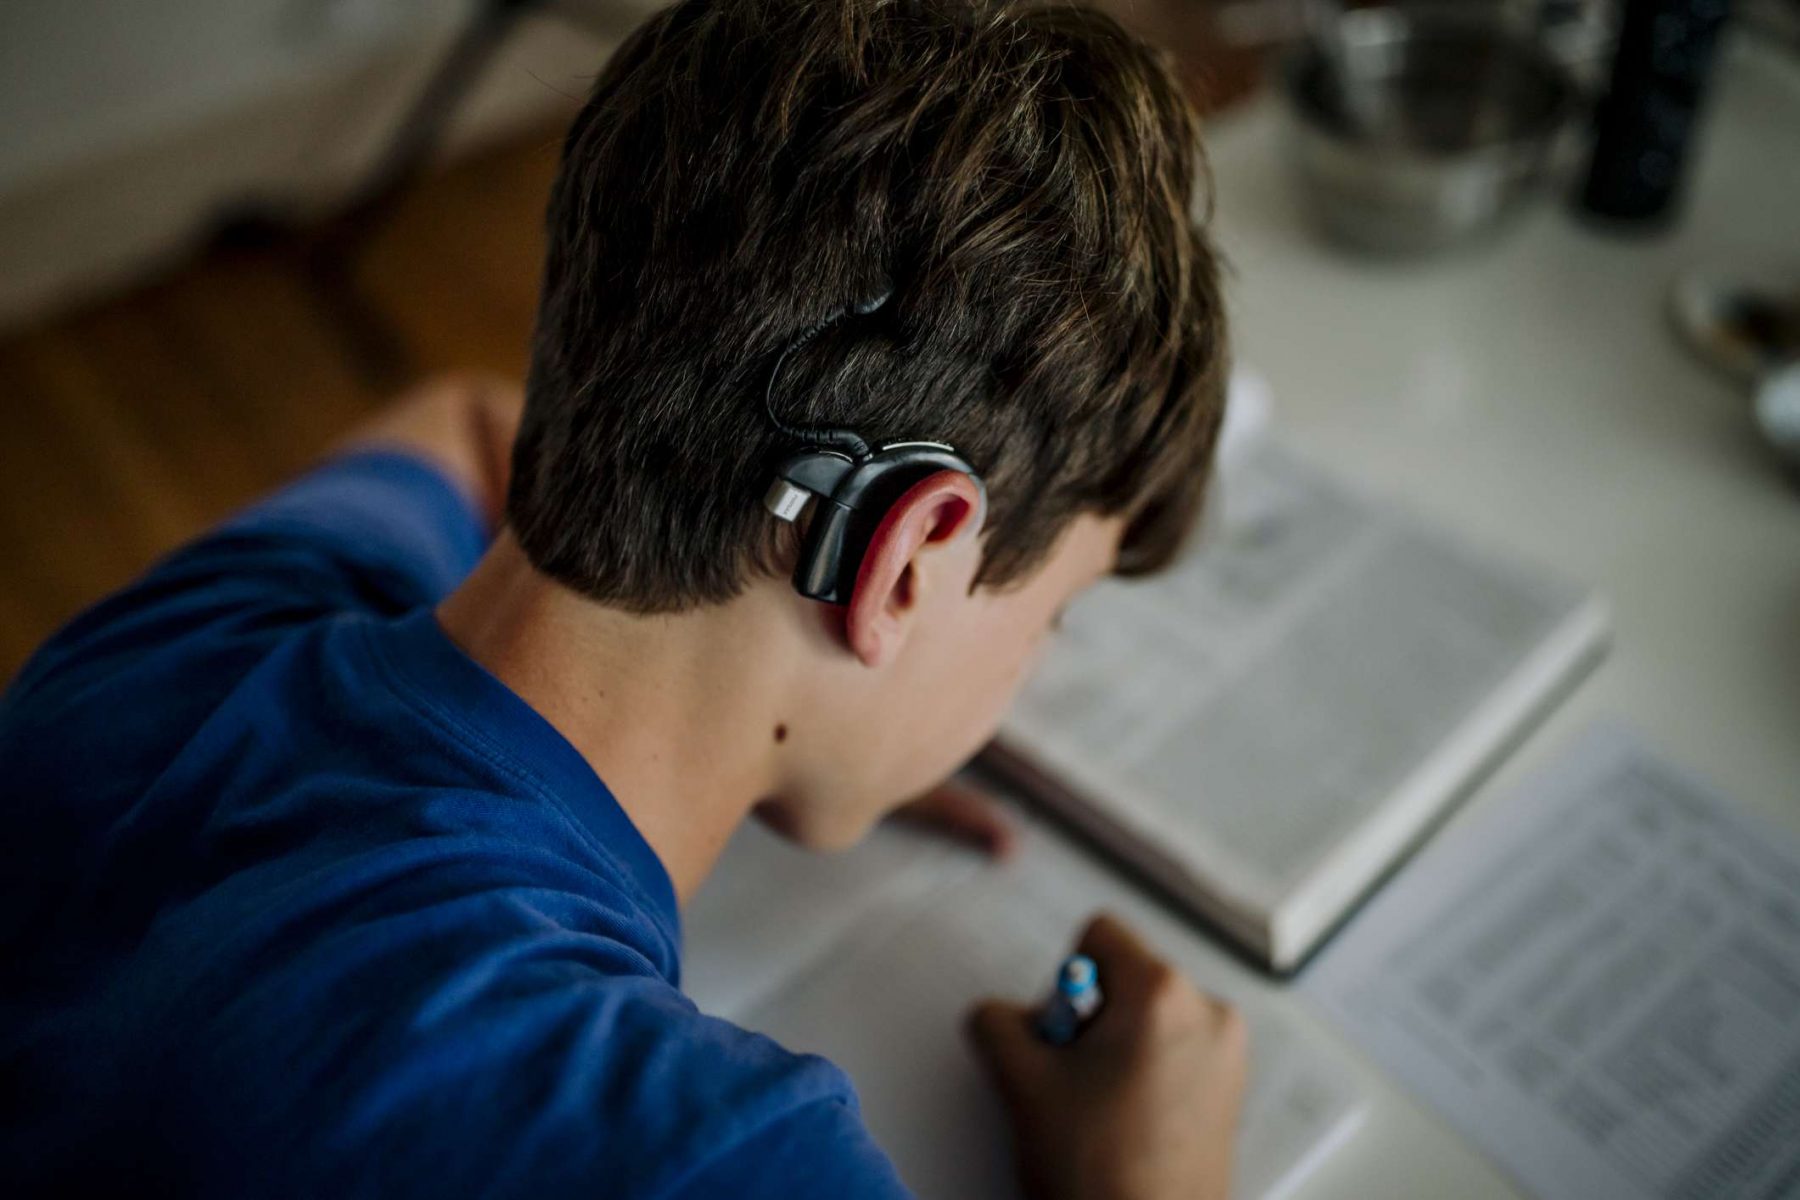 Κοχλιακά εμφυτεύματα: Μελέτη συσχετίζει την παρουσία τους με περαιτέρω απώλεια ακοής μακροπρόθεσμα